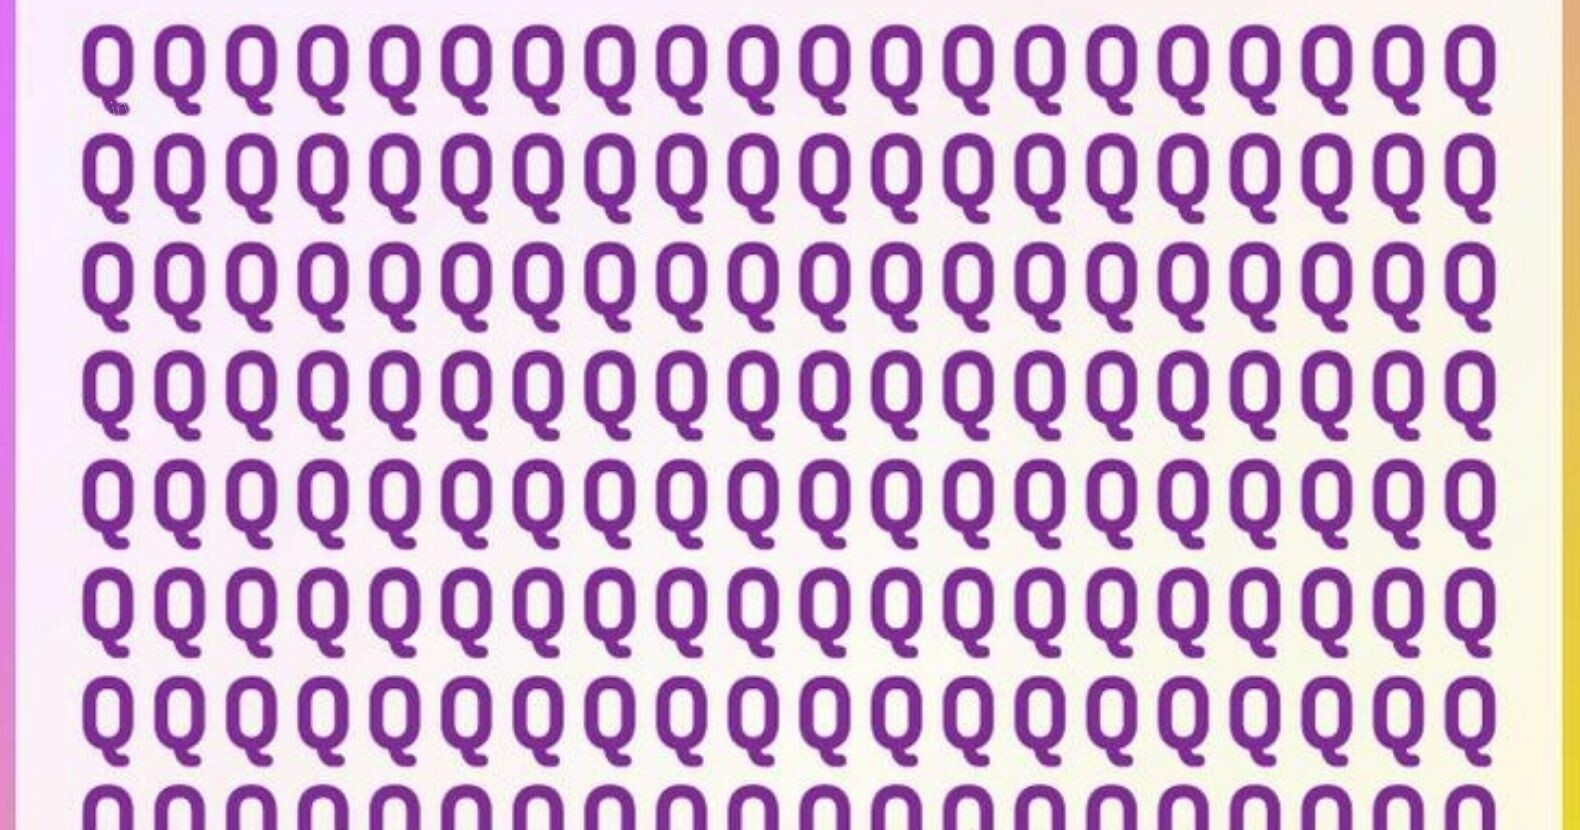 97%-uk megbukott ebben a vizuális rejtvényben: Keresse meg a Q betűk között elrejtett „O” betűt kevesebb mint 8 másodperc alatt